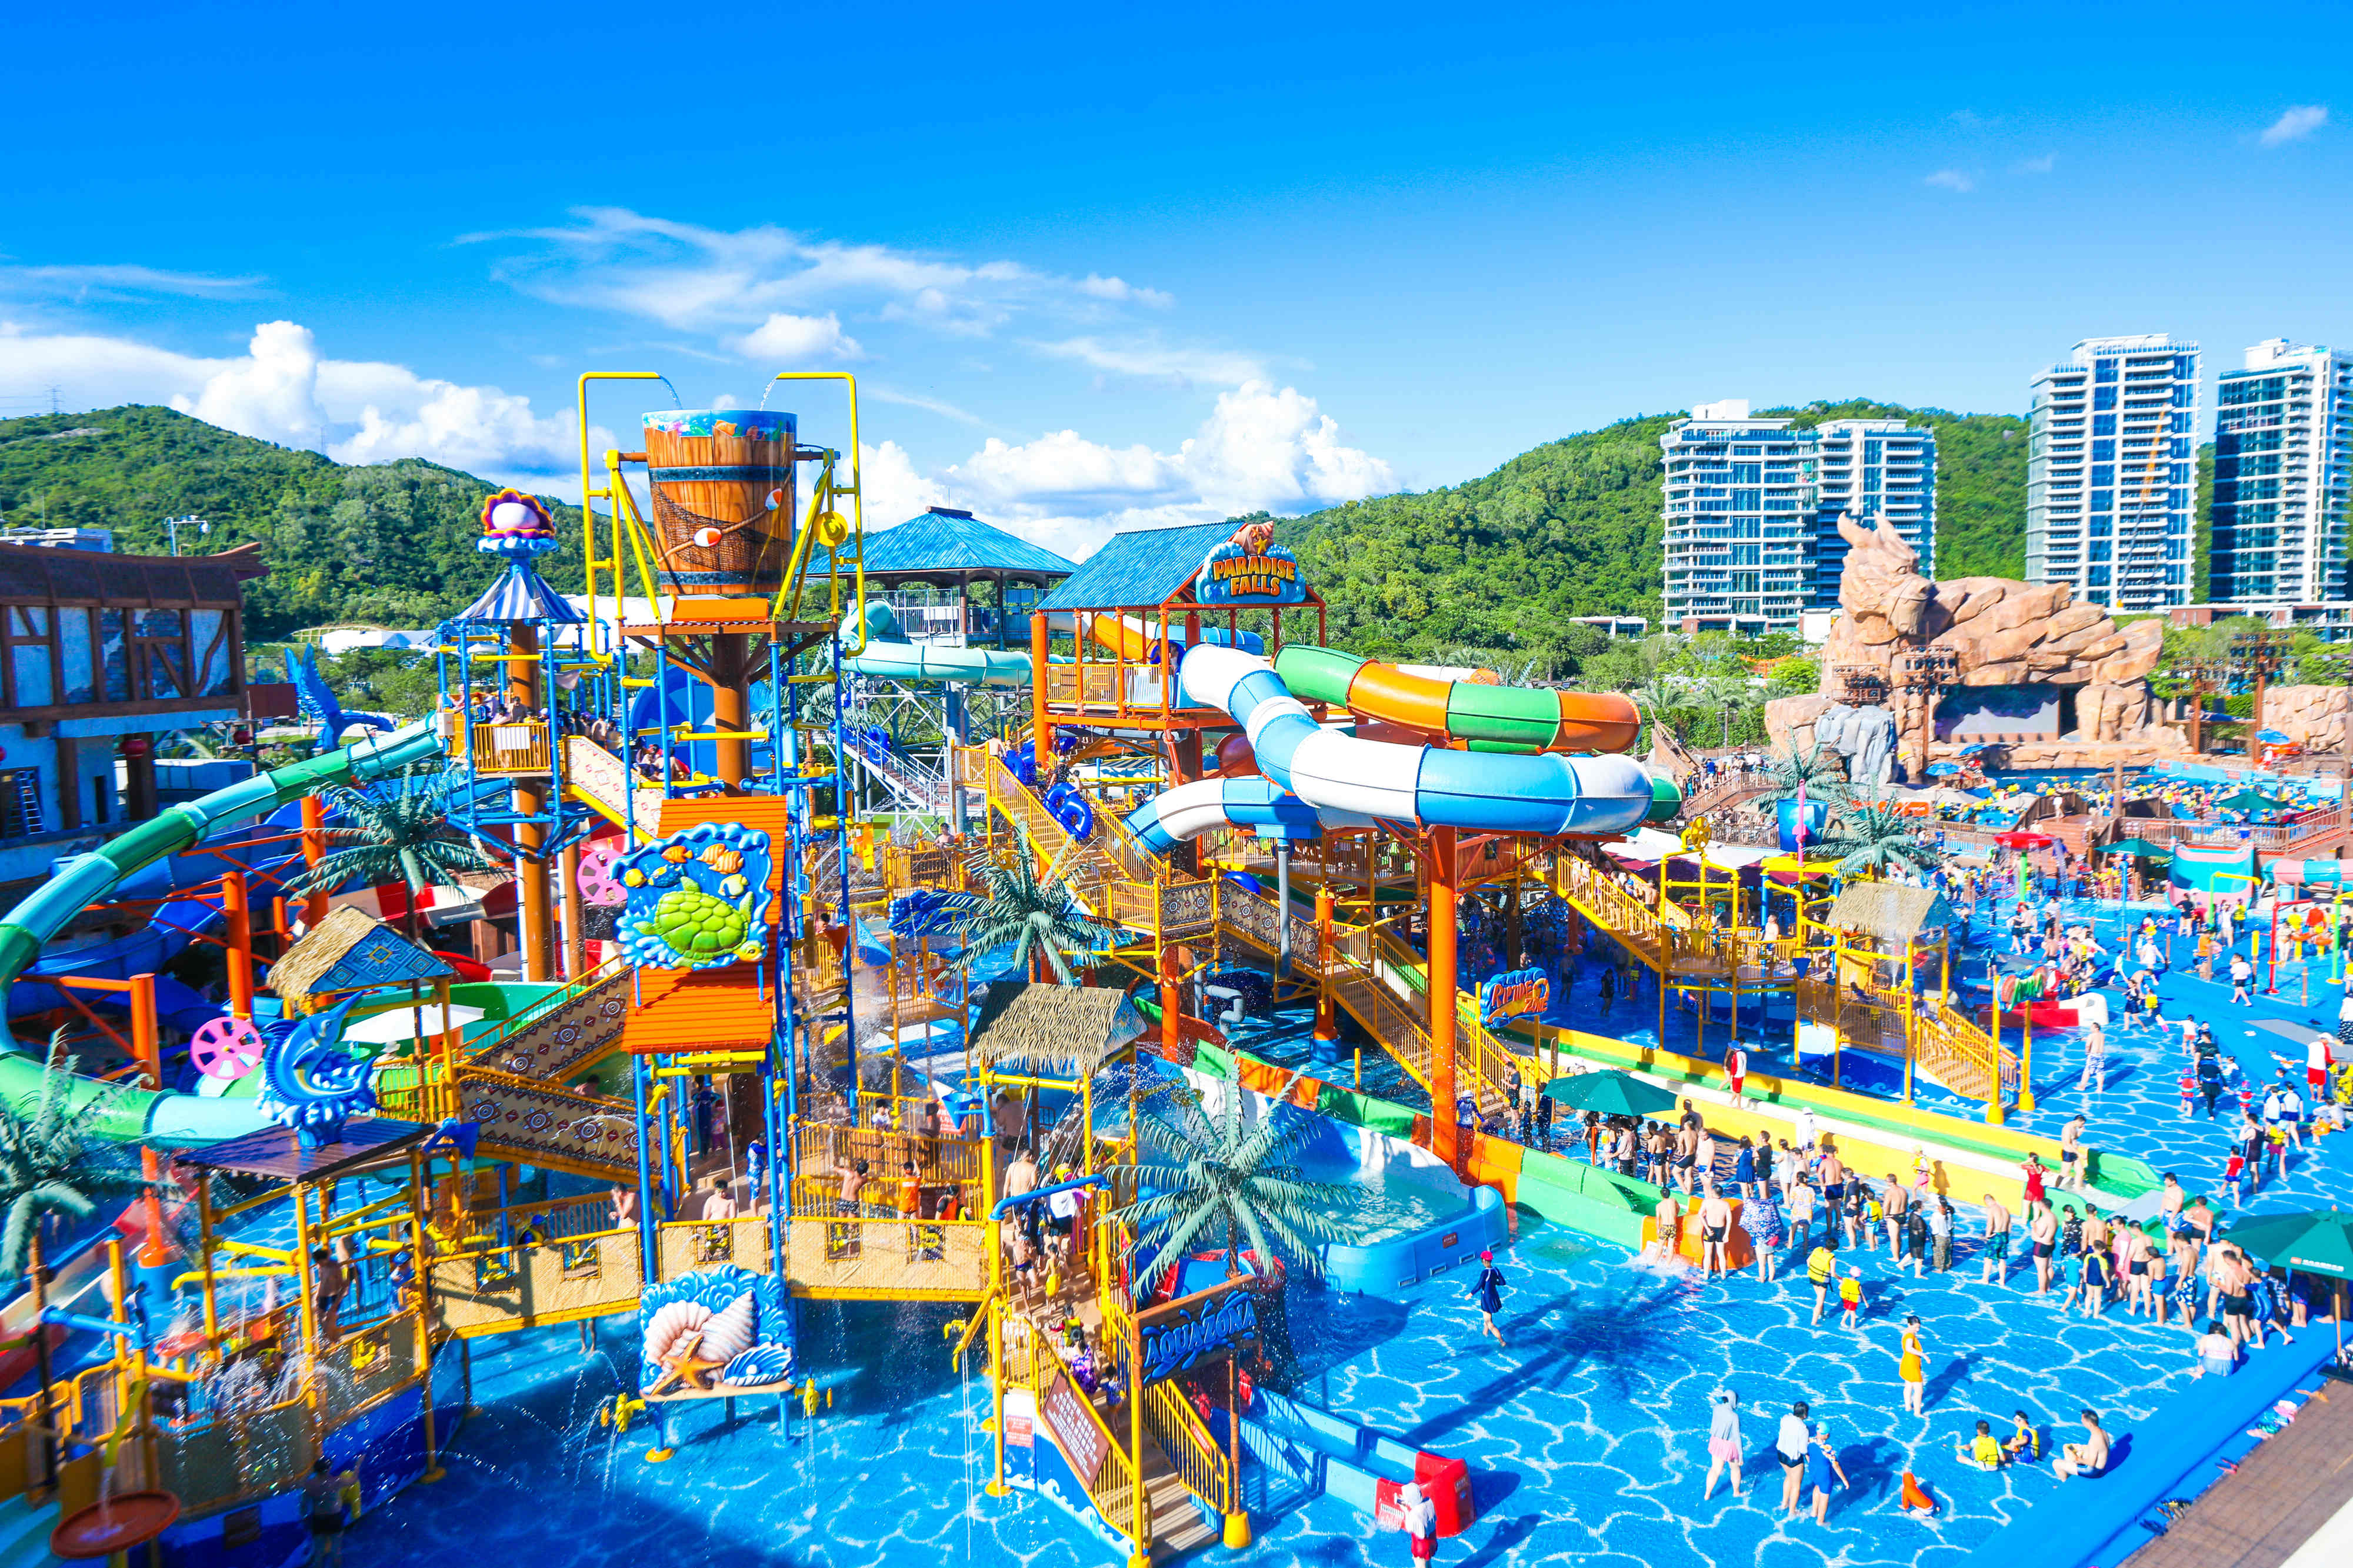 深圳最大滨海旅游度假区——佳兆业国际乐园9月2日开业后,迎来了首个